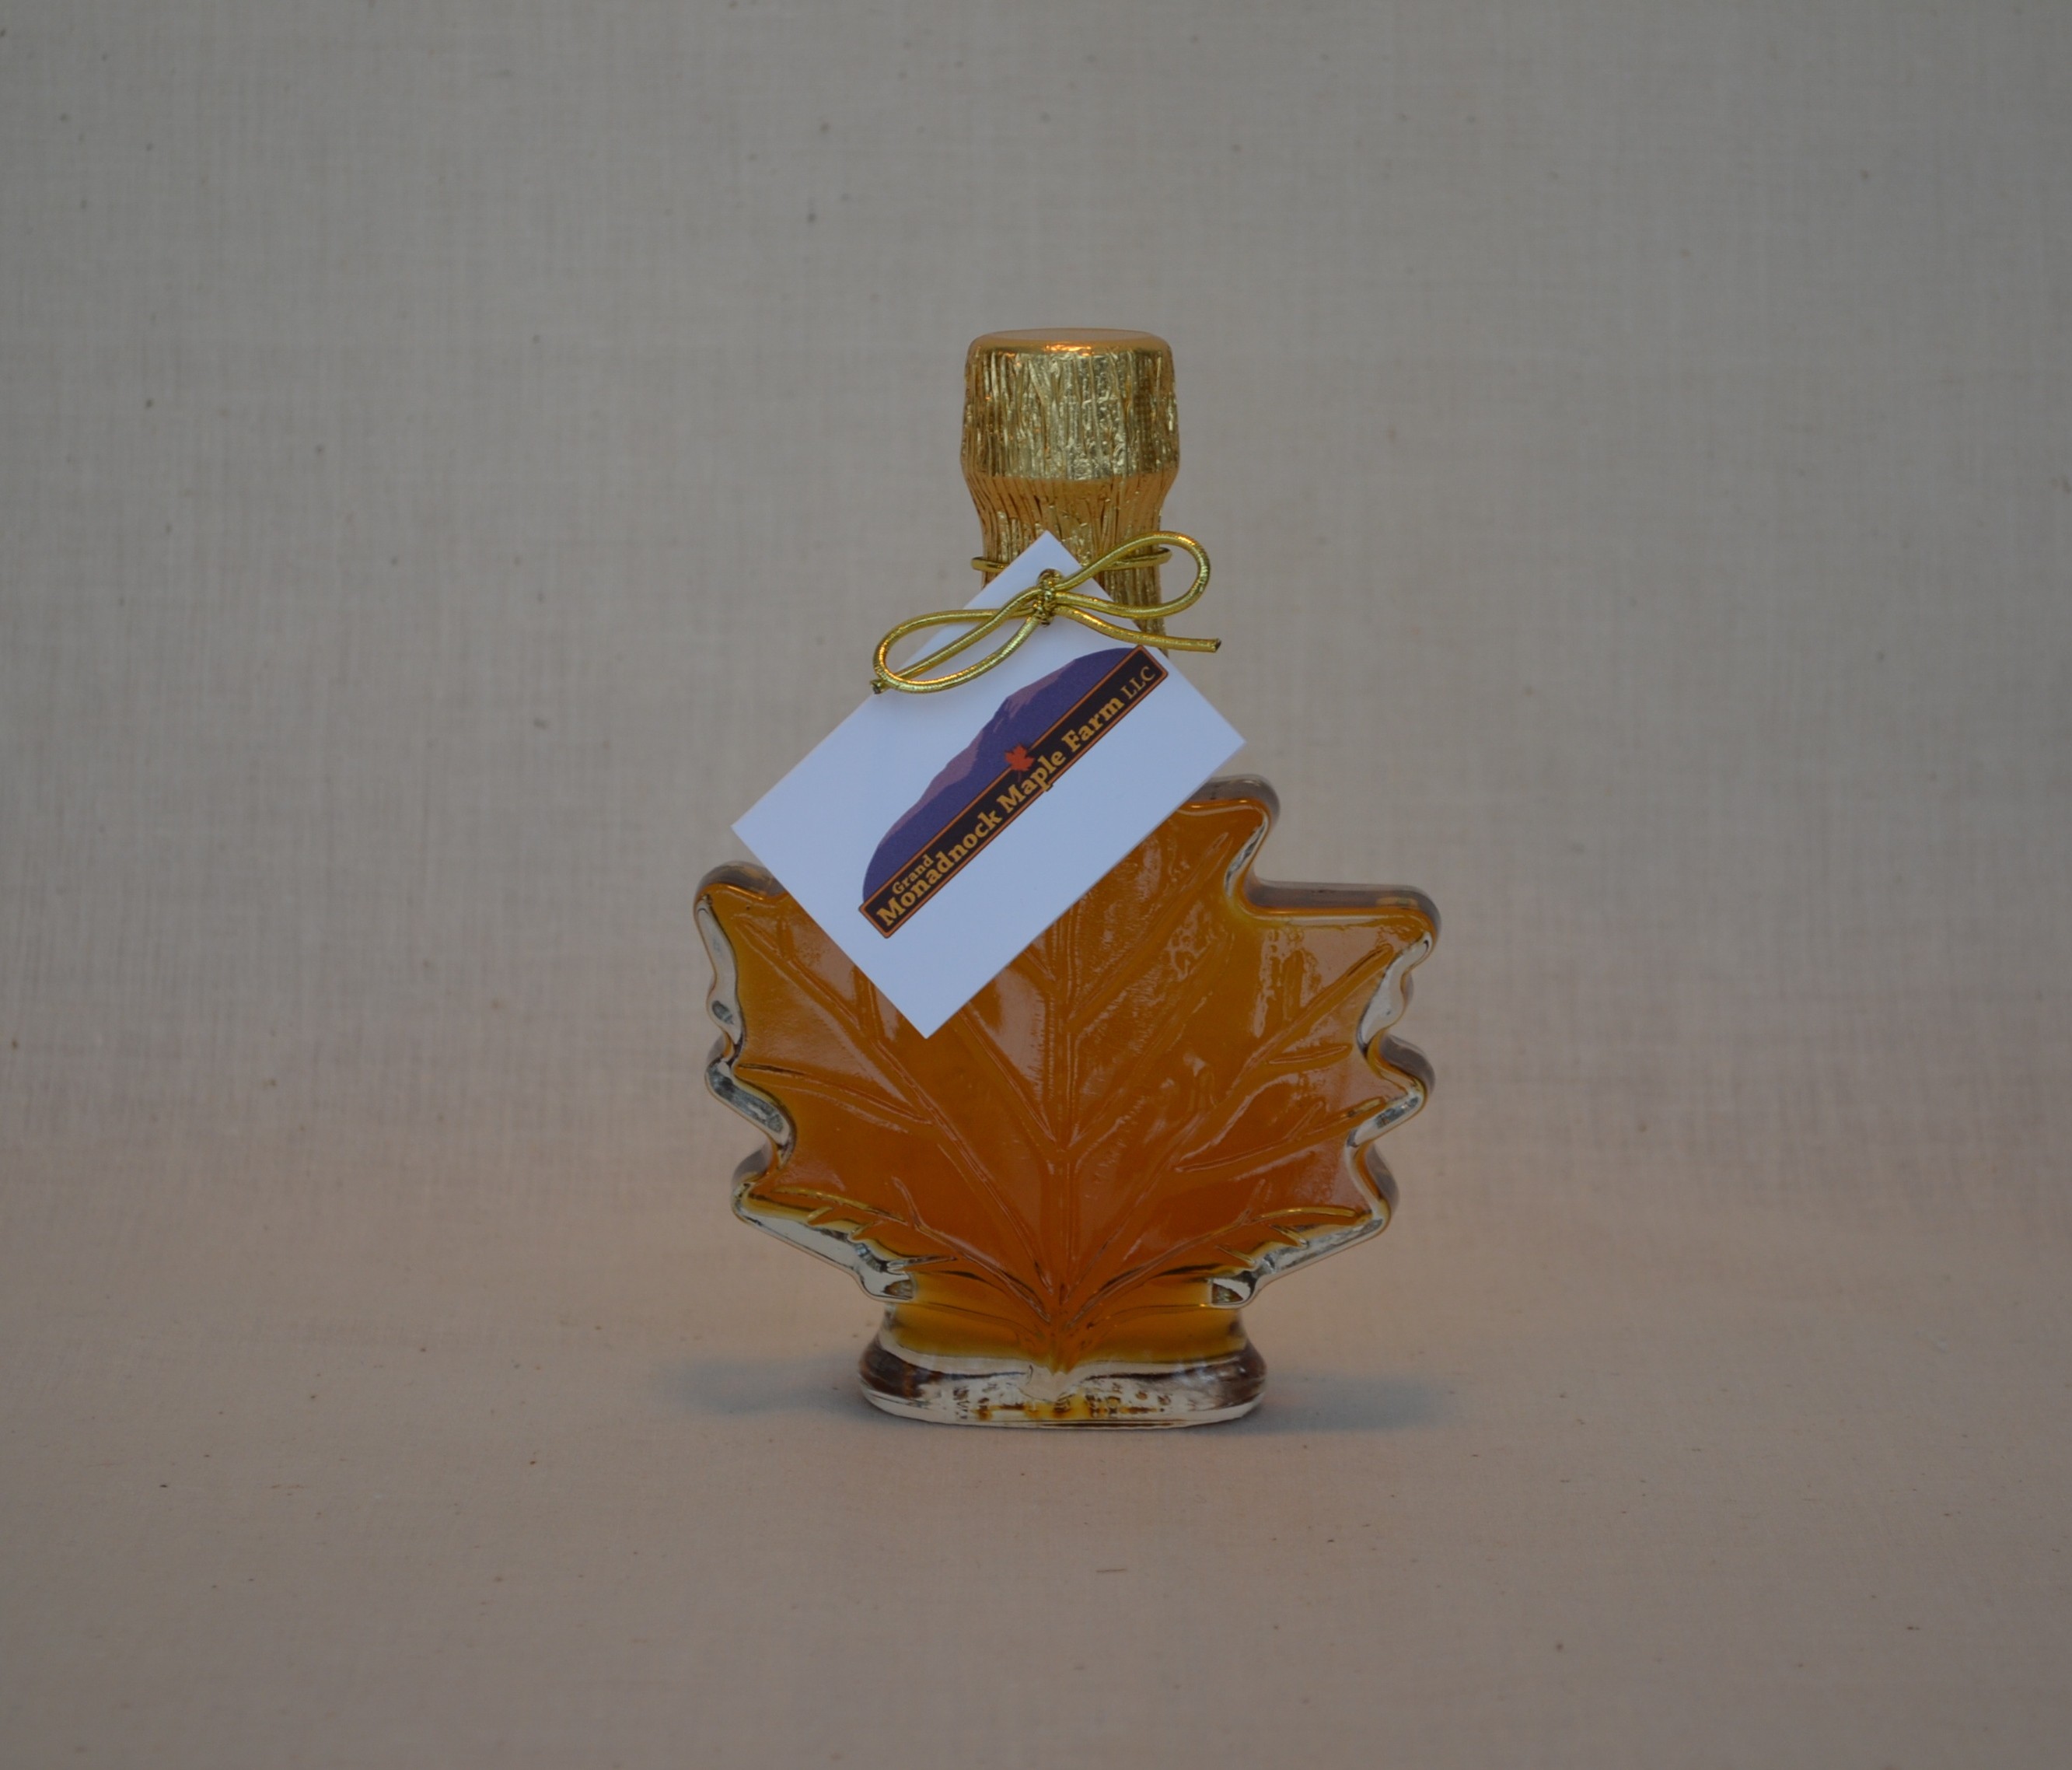 50 ml Glass Maple Leaf